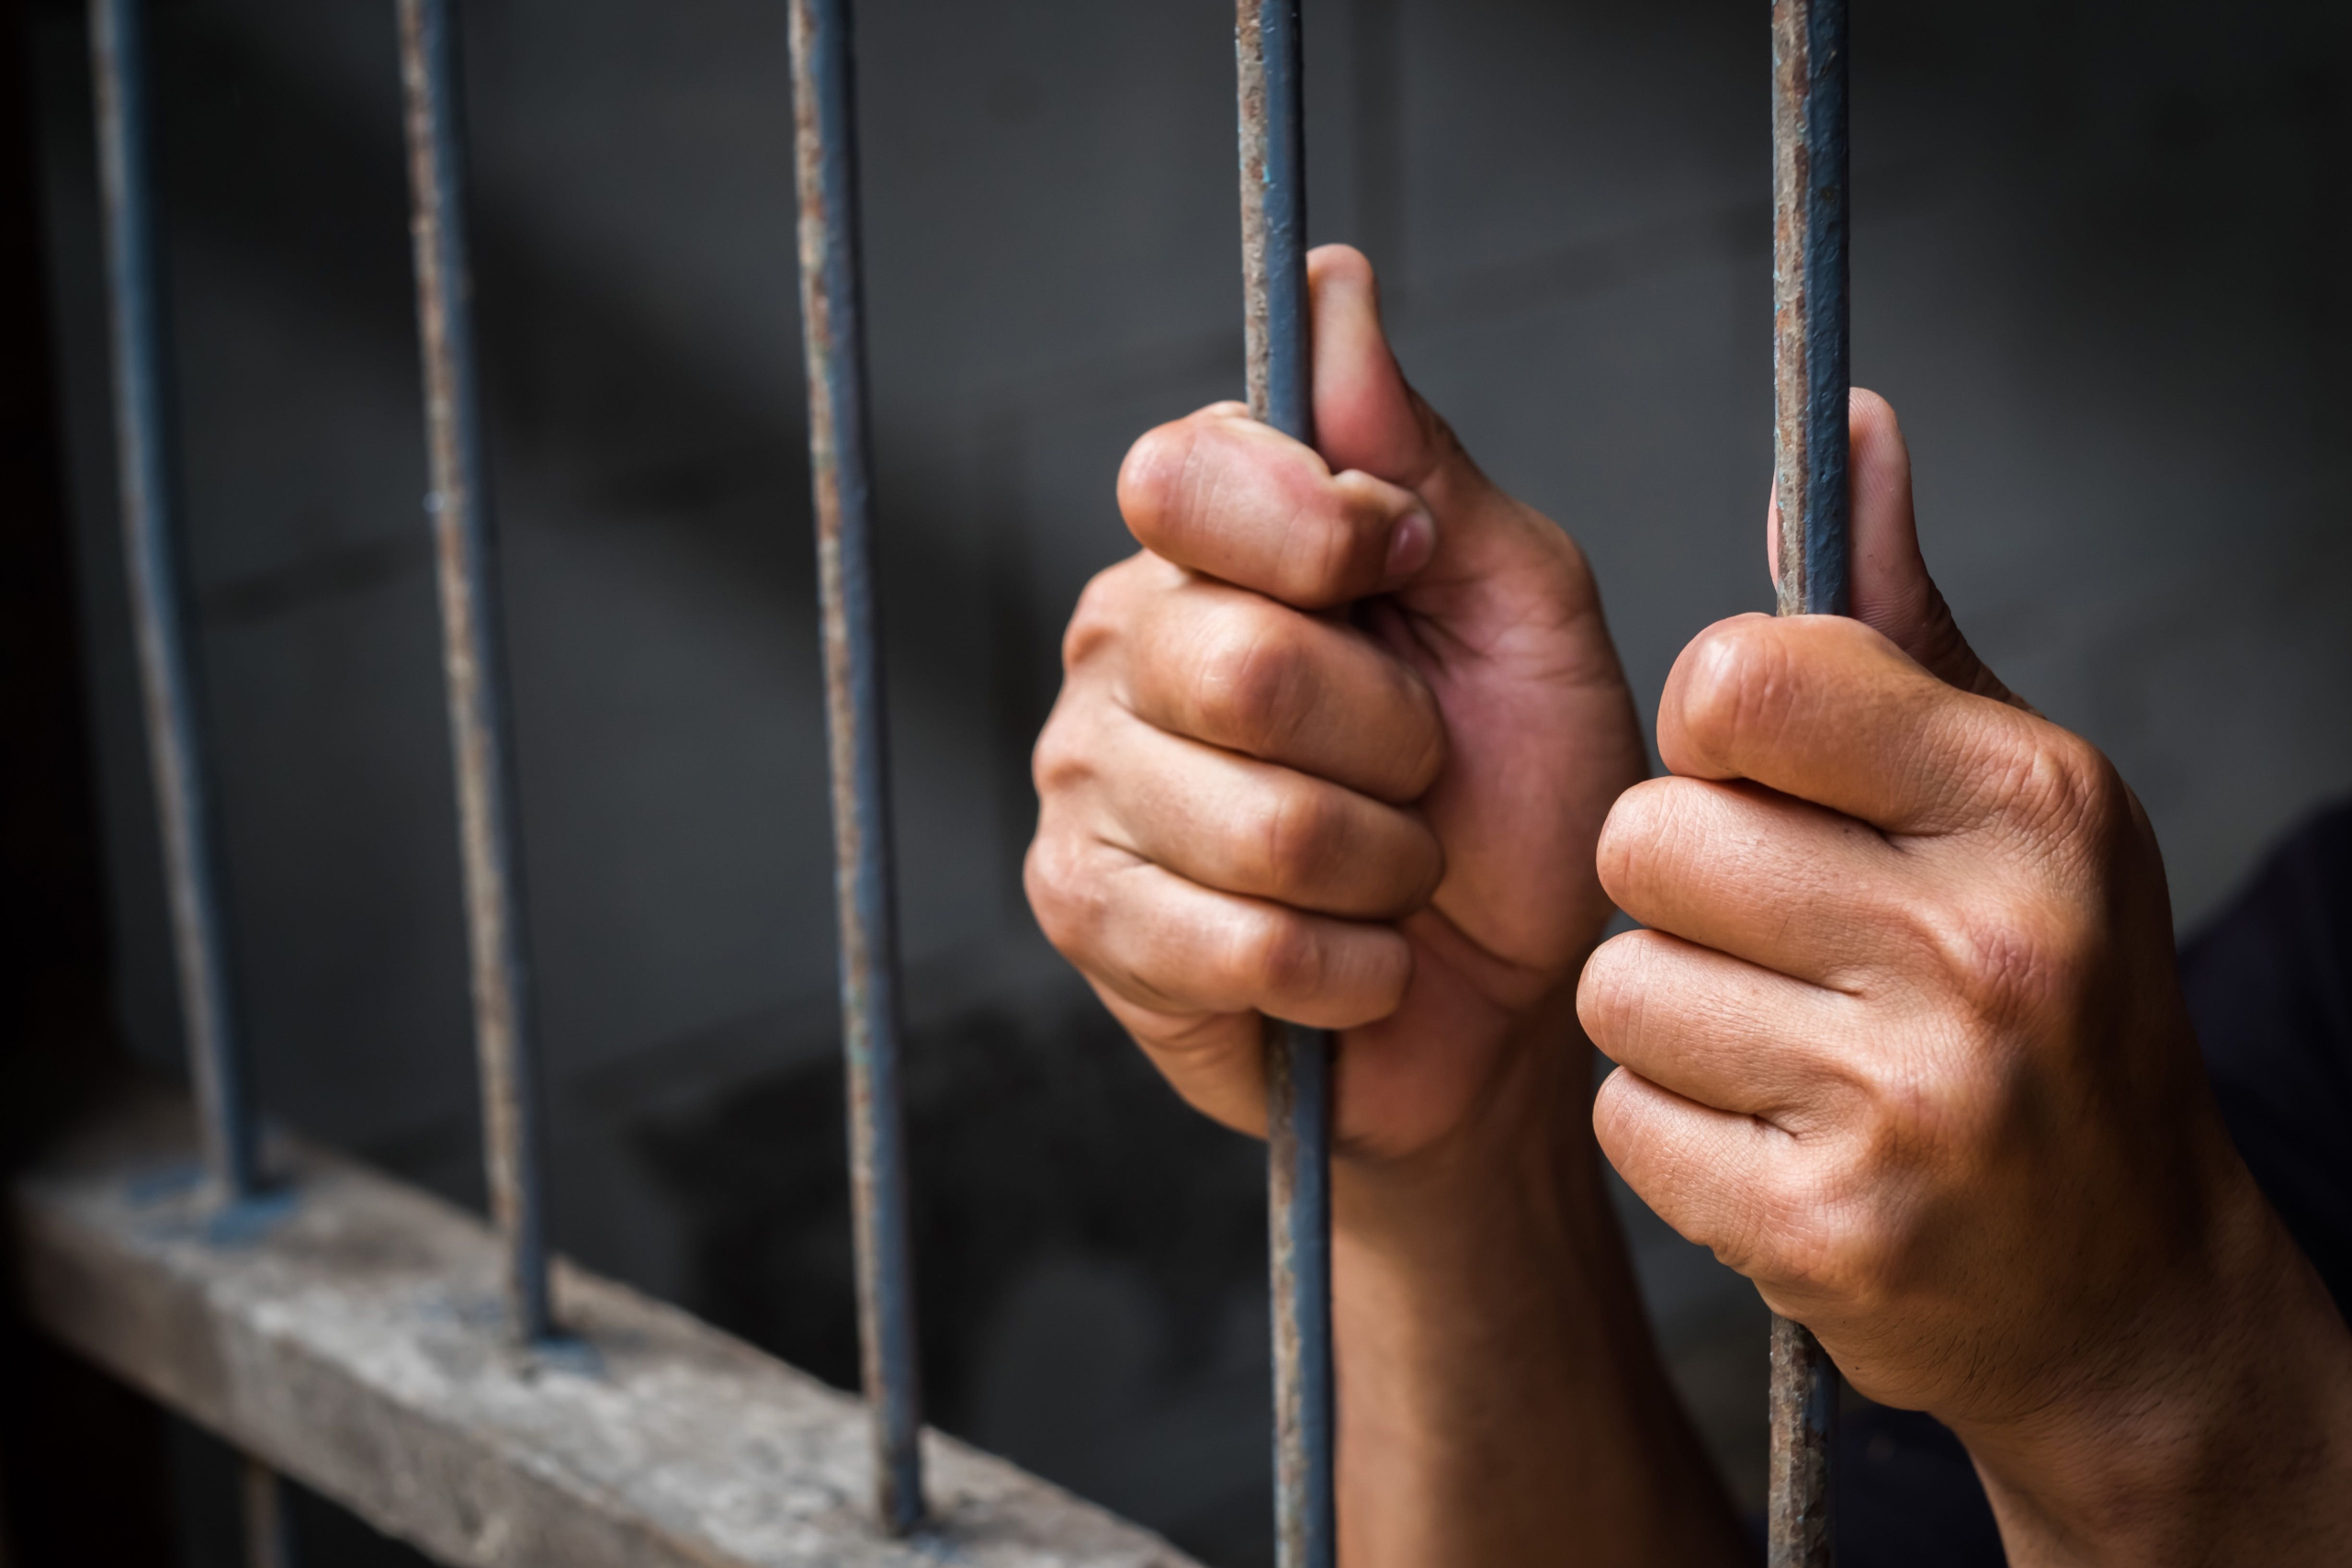 إدارة سجن طاطا تنفي ادعاءات تعذيب سجين ومعاناته من الإهمال الطبي